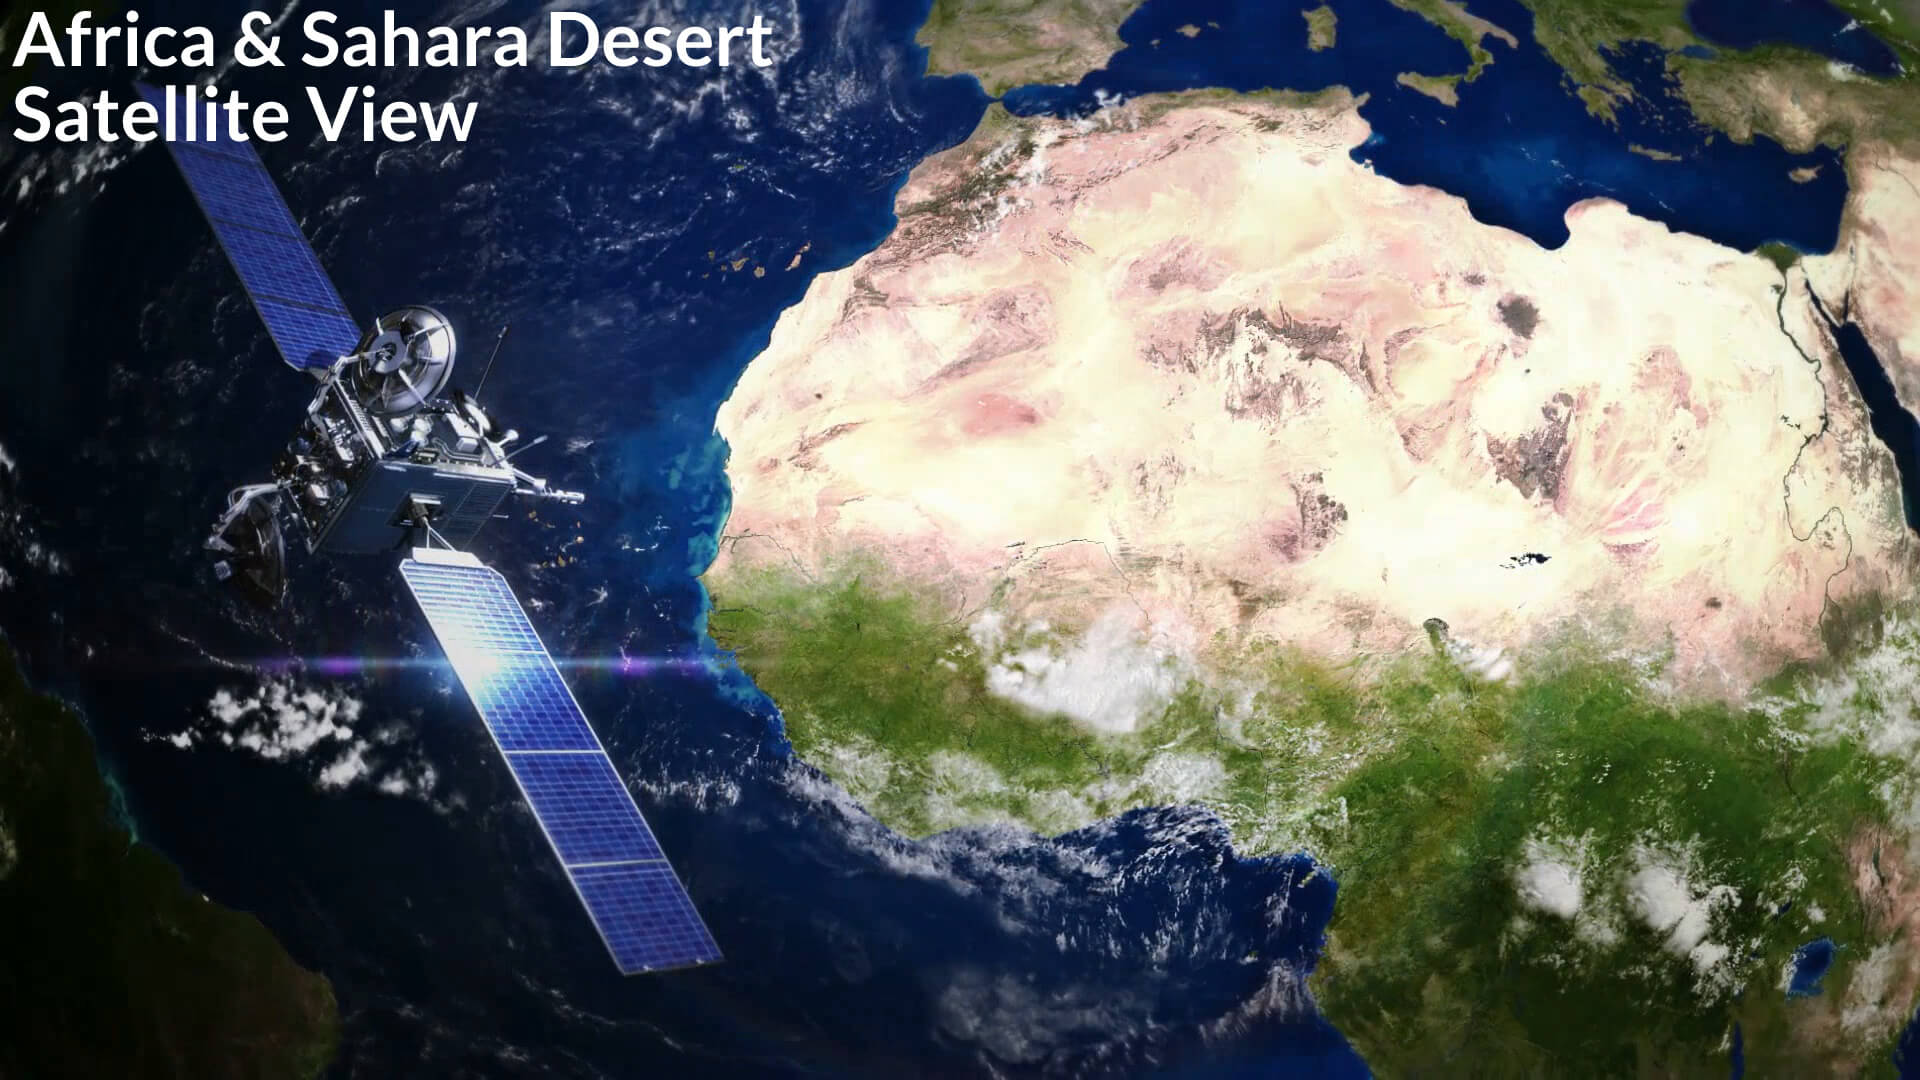 Africa and Sahara Desert Satellite View